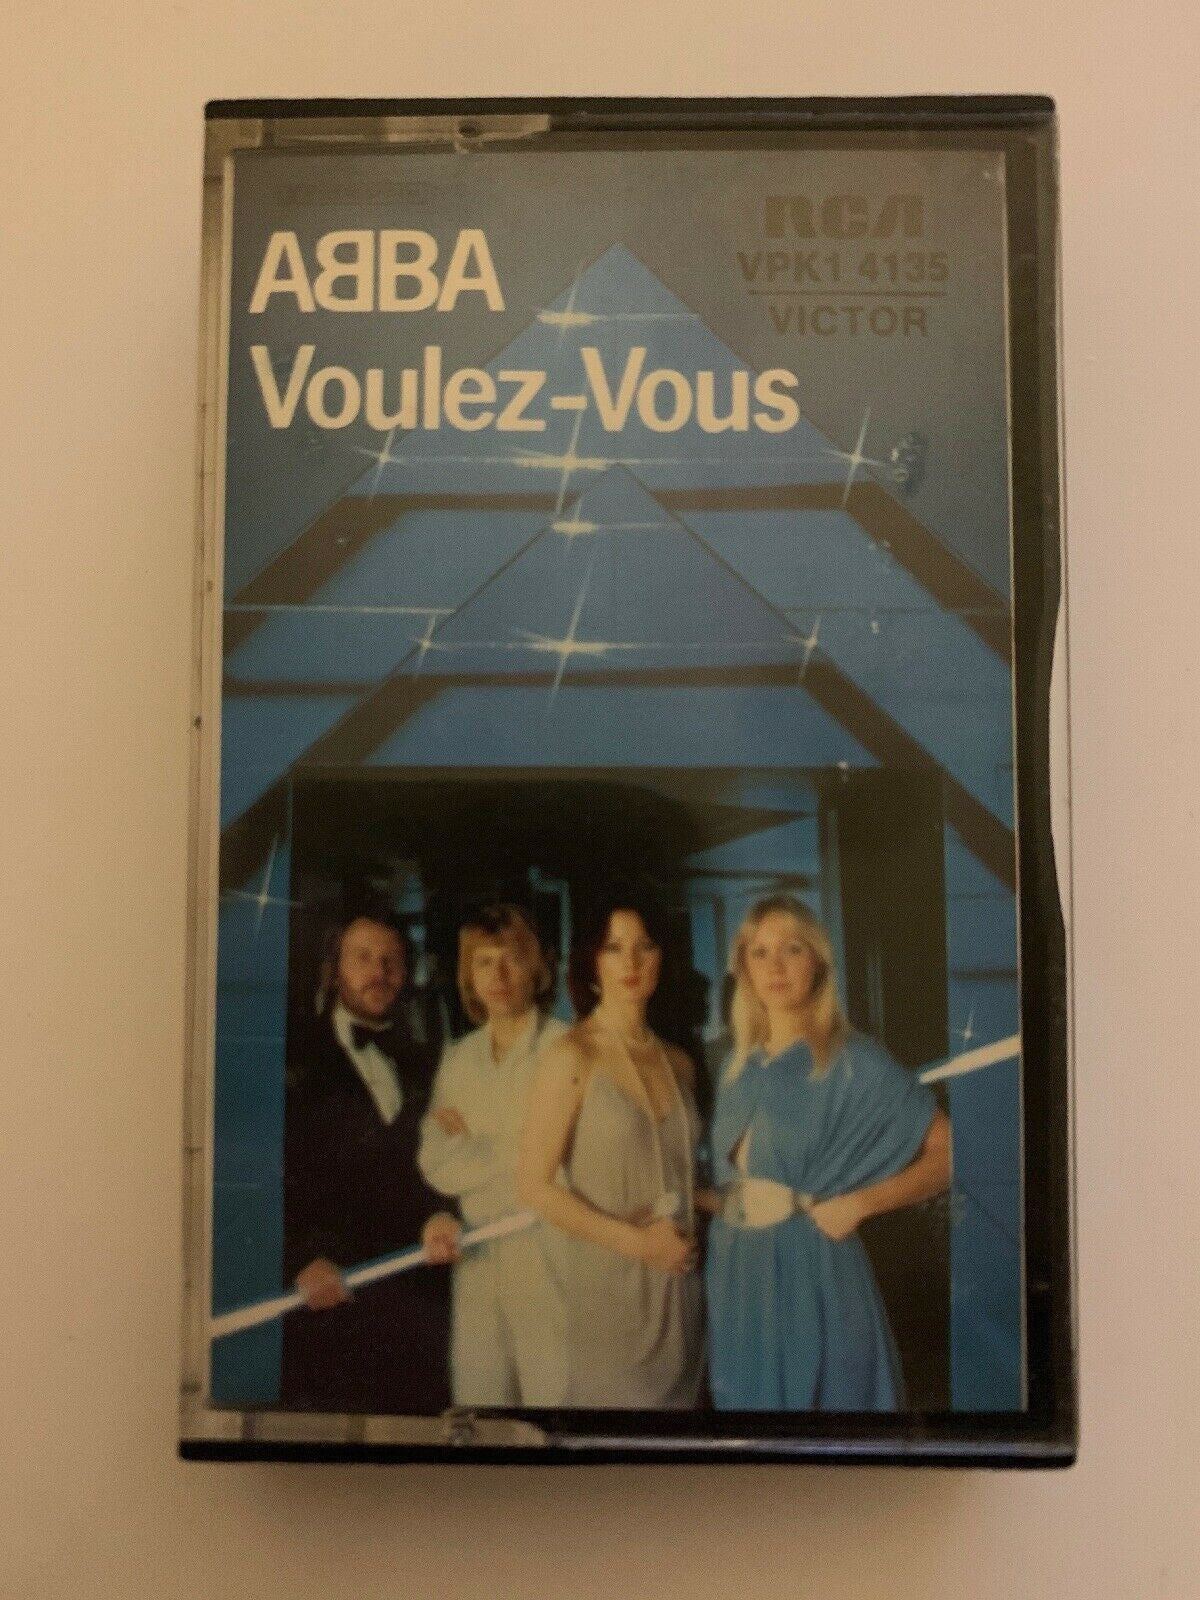 ABBA Voulez-Vouz Album (Cassette Tape, 1979) RCA VPK1 4135